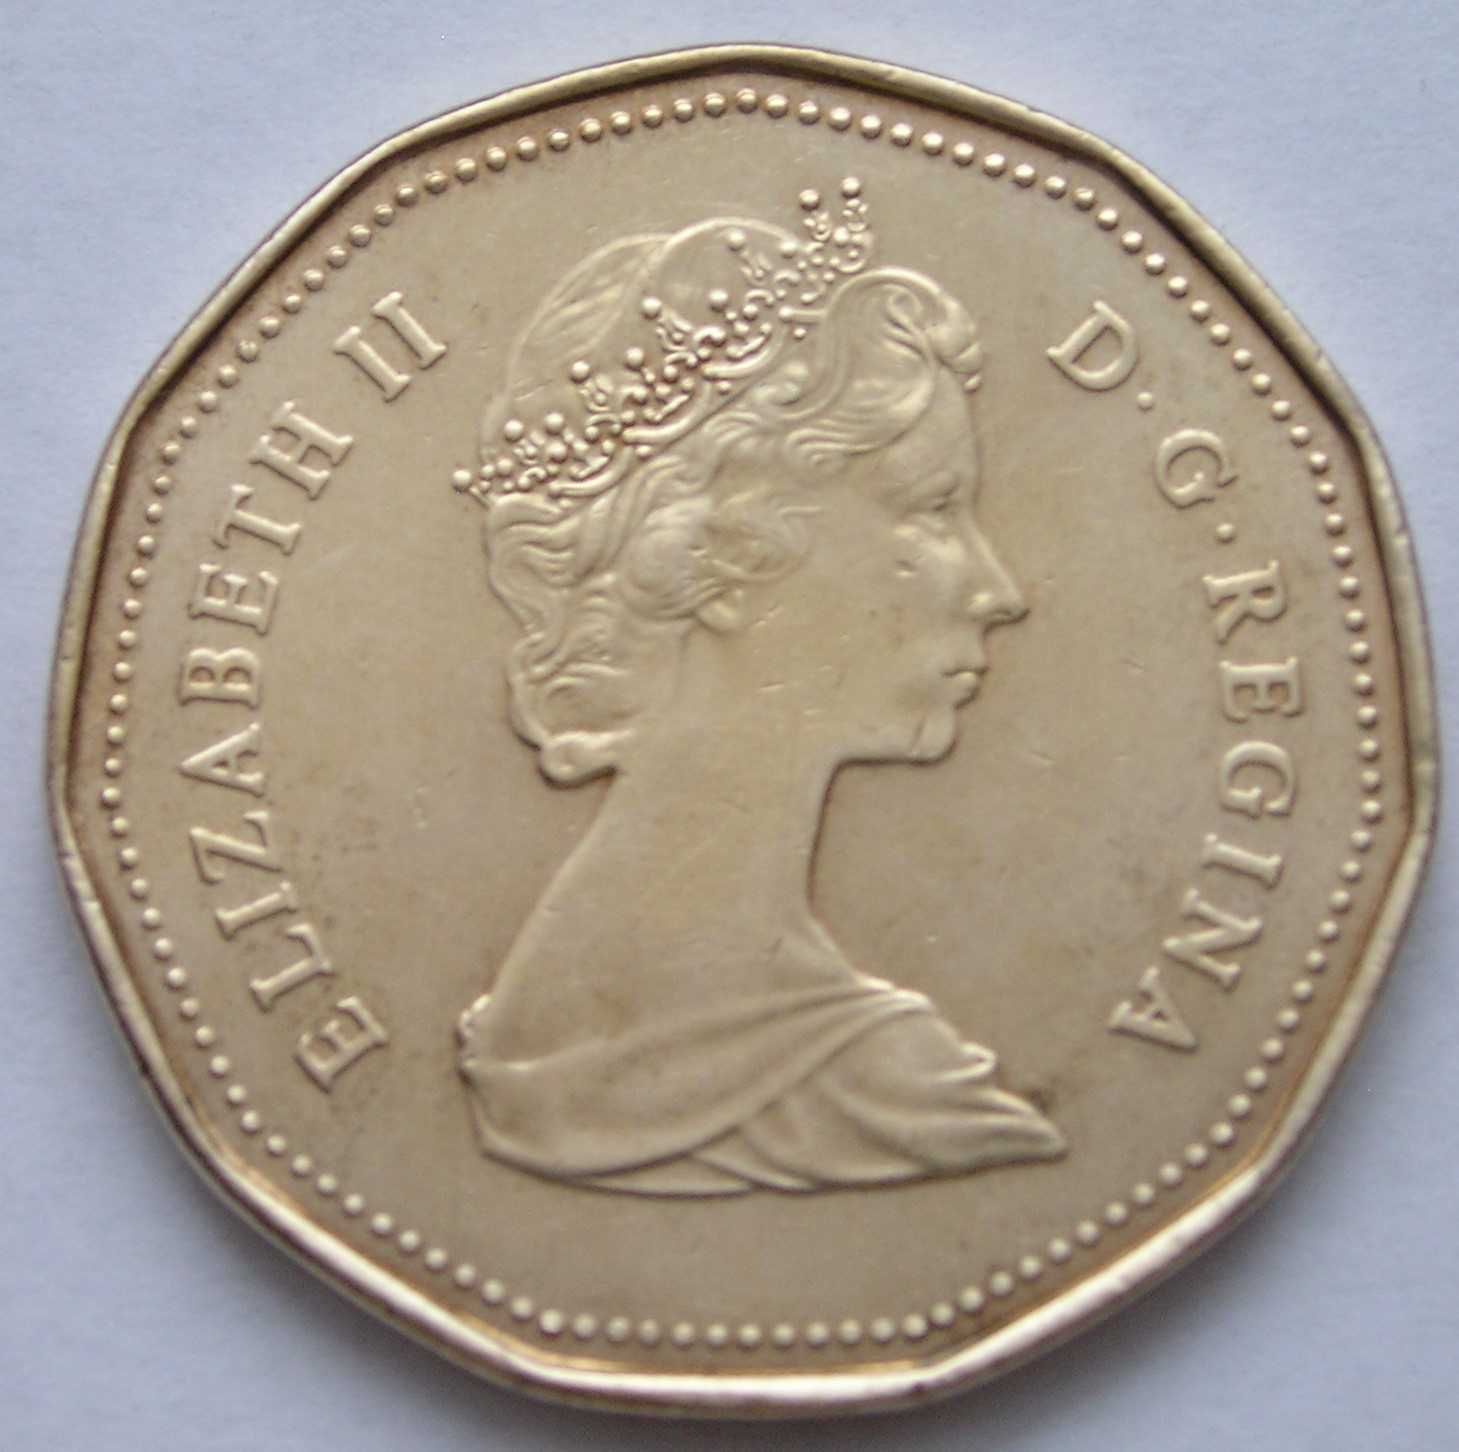 Kanada 1 dolar 1987 - kaczka / gęś